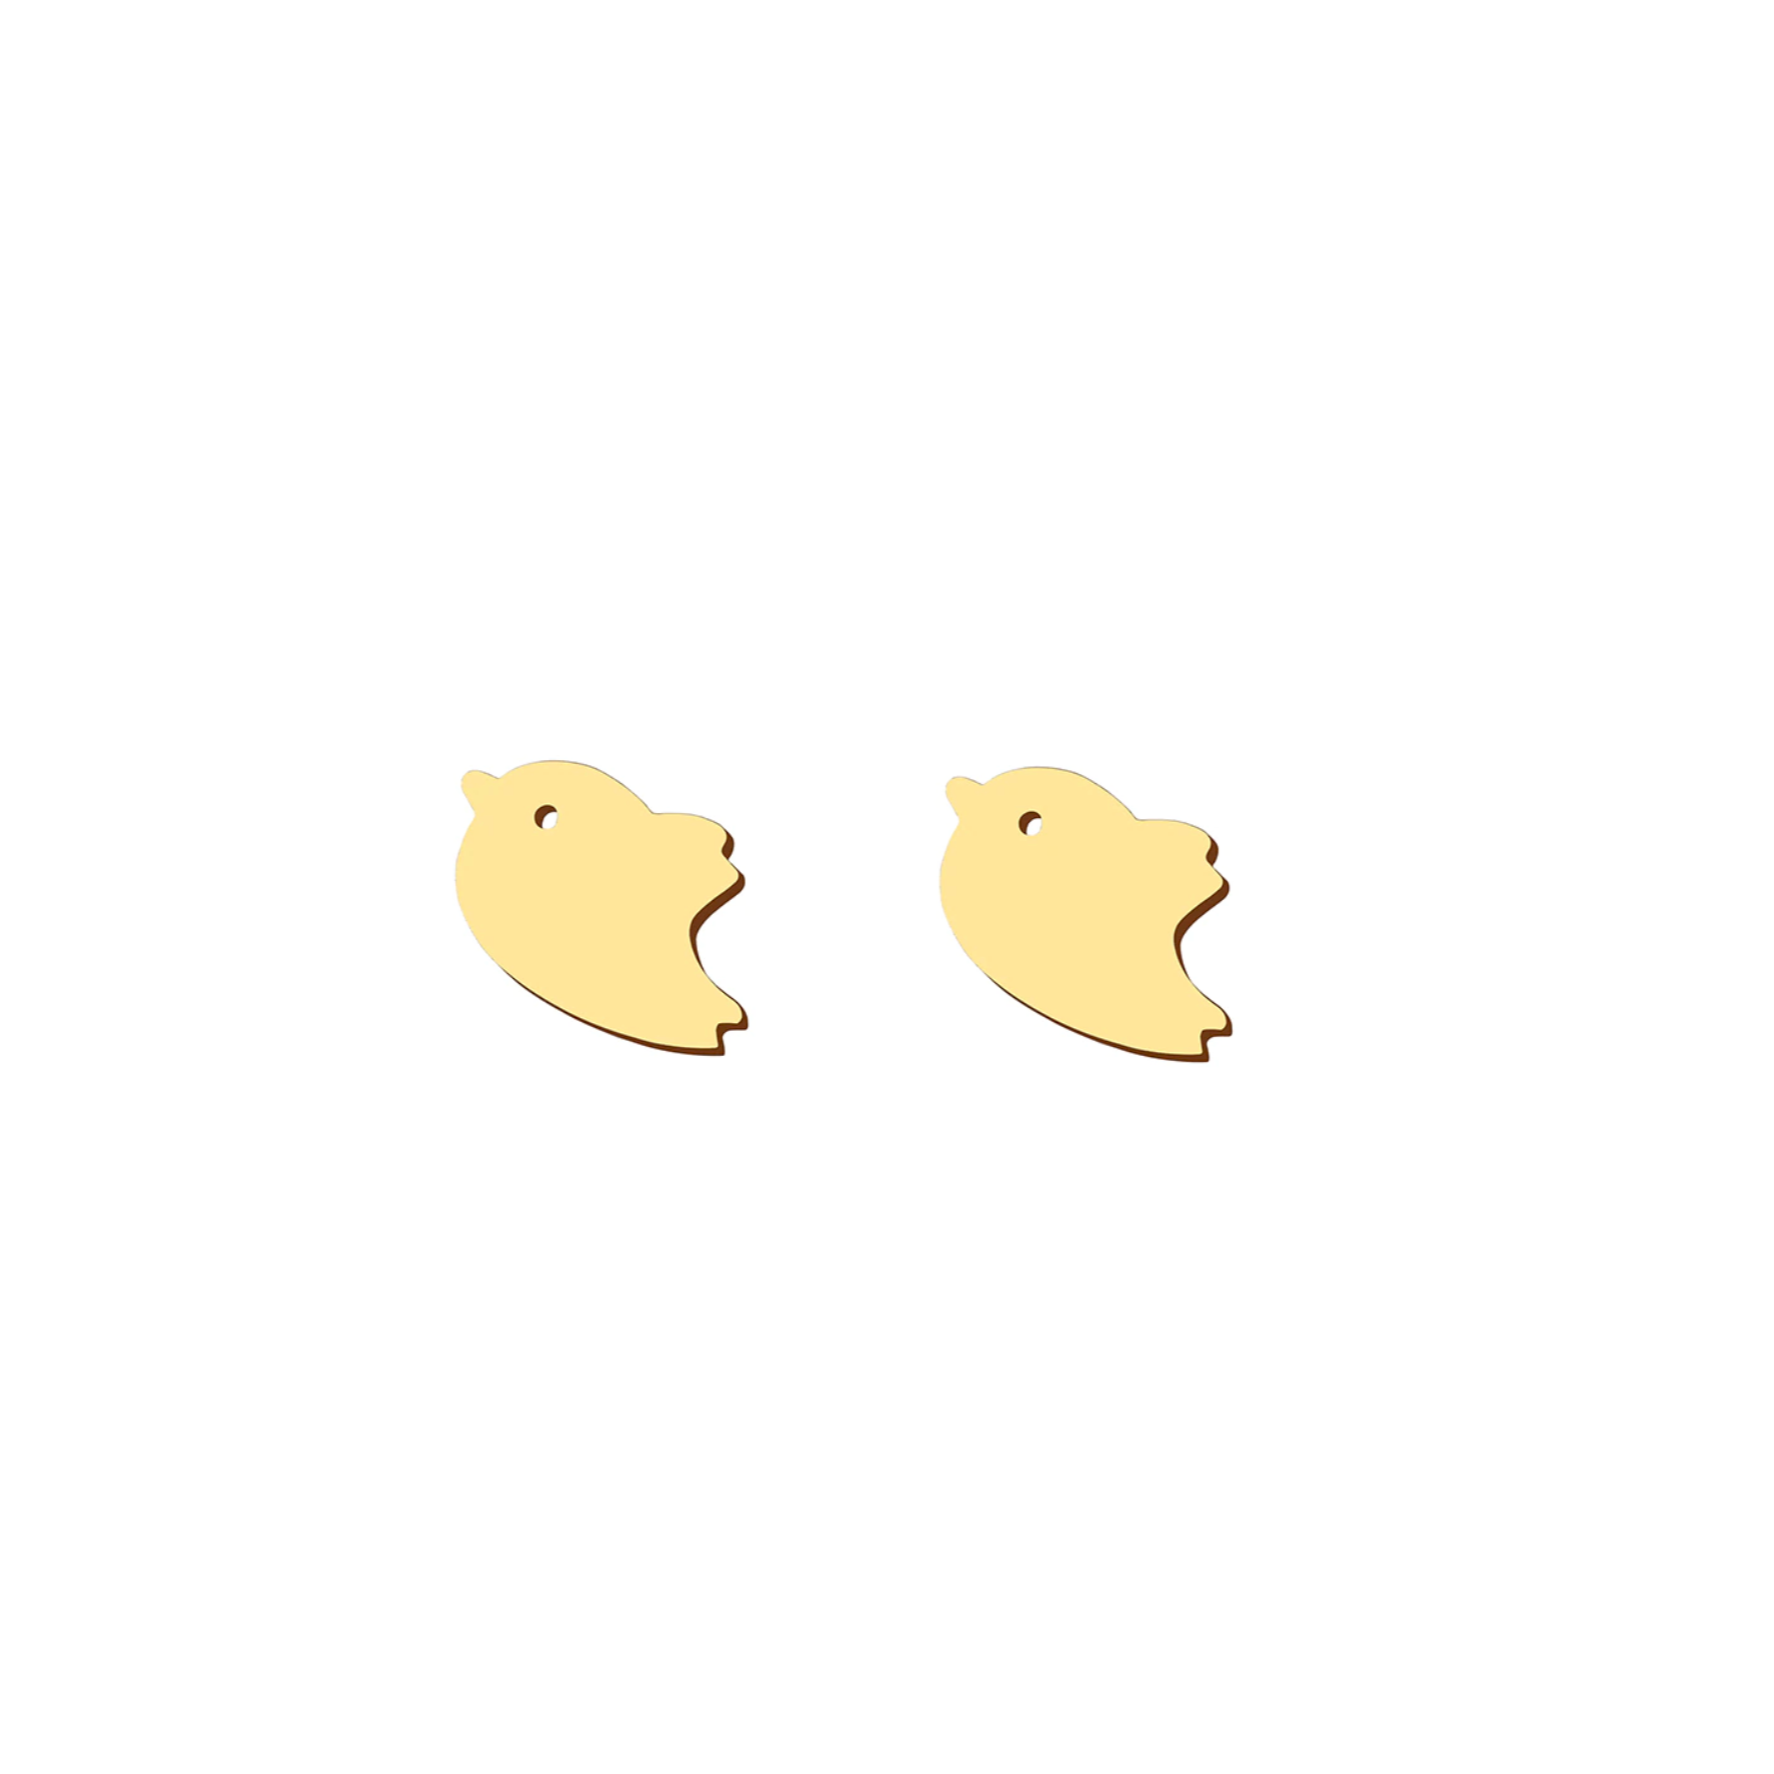 Boucles d'oreilles acier inoxydable doré petits oiseaux hirondelles. Détails produit : Couleur or. Acier inoxydable doré. Taille 0,8 cm x 1 cm.  Version couleur argent